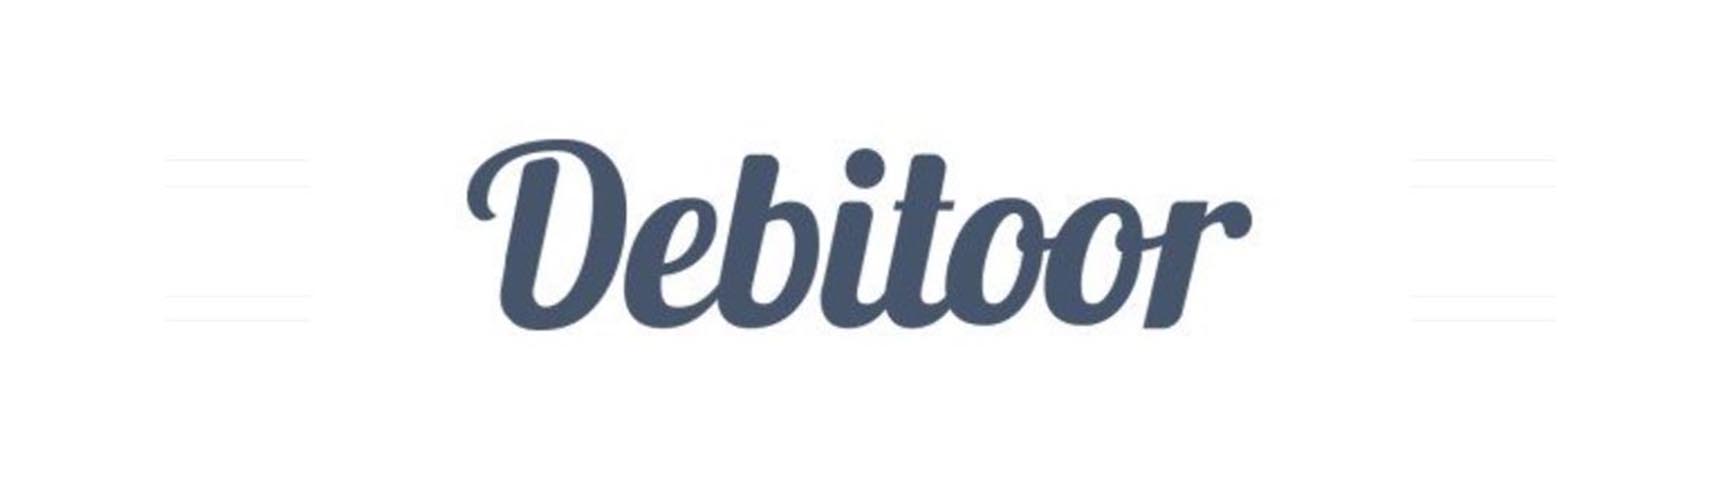 Rechnungsprogramm: Debitoor Logo 2013